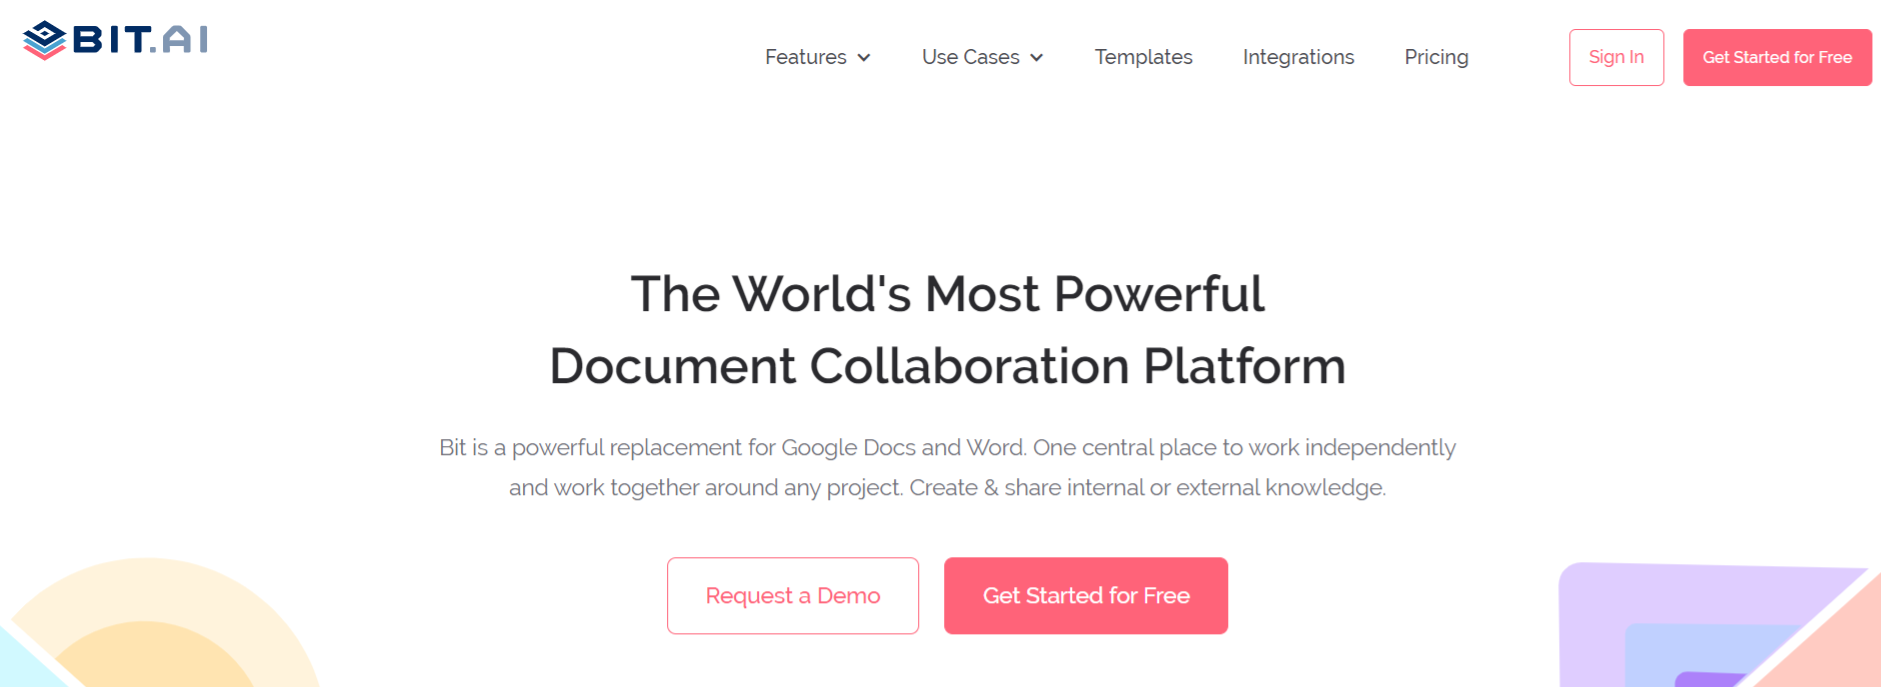 Bit.ai: Document Collaboration platform